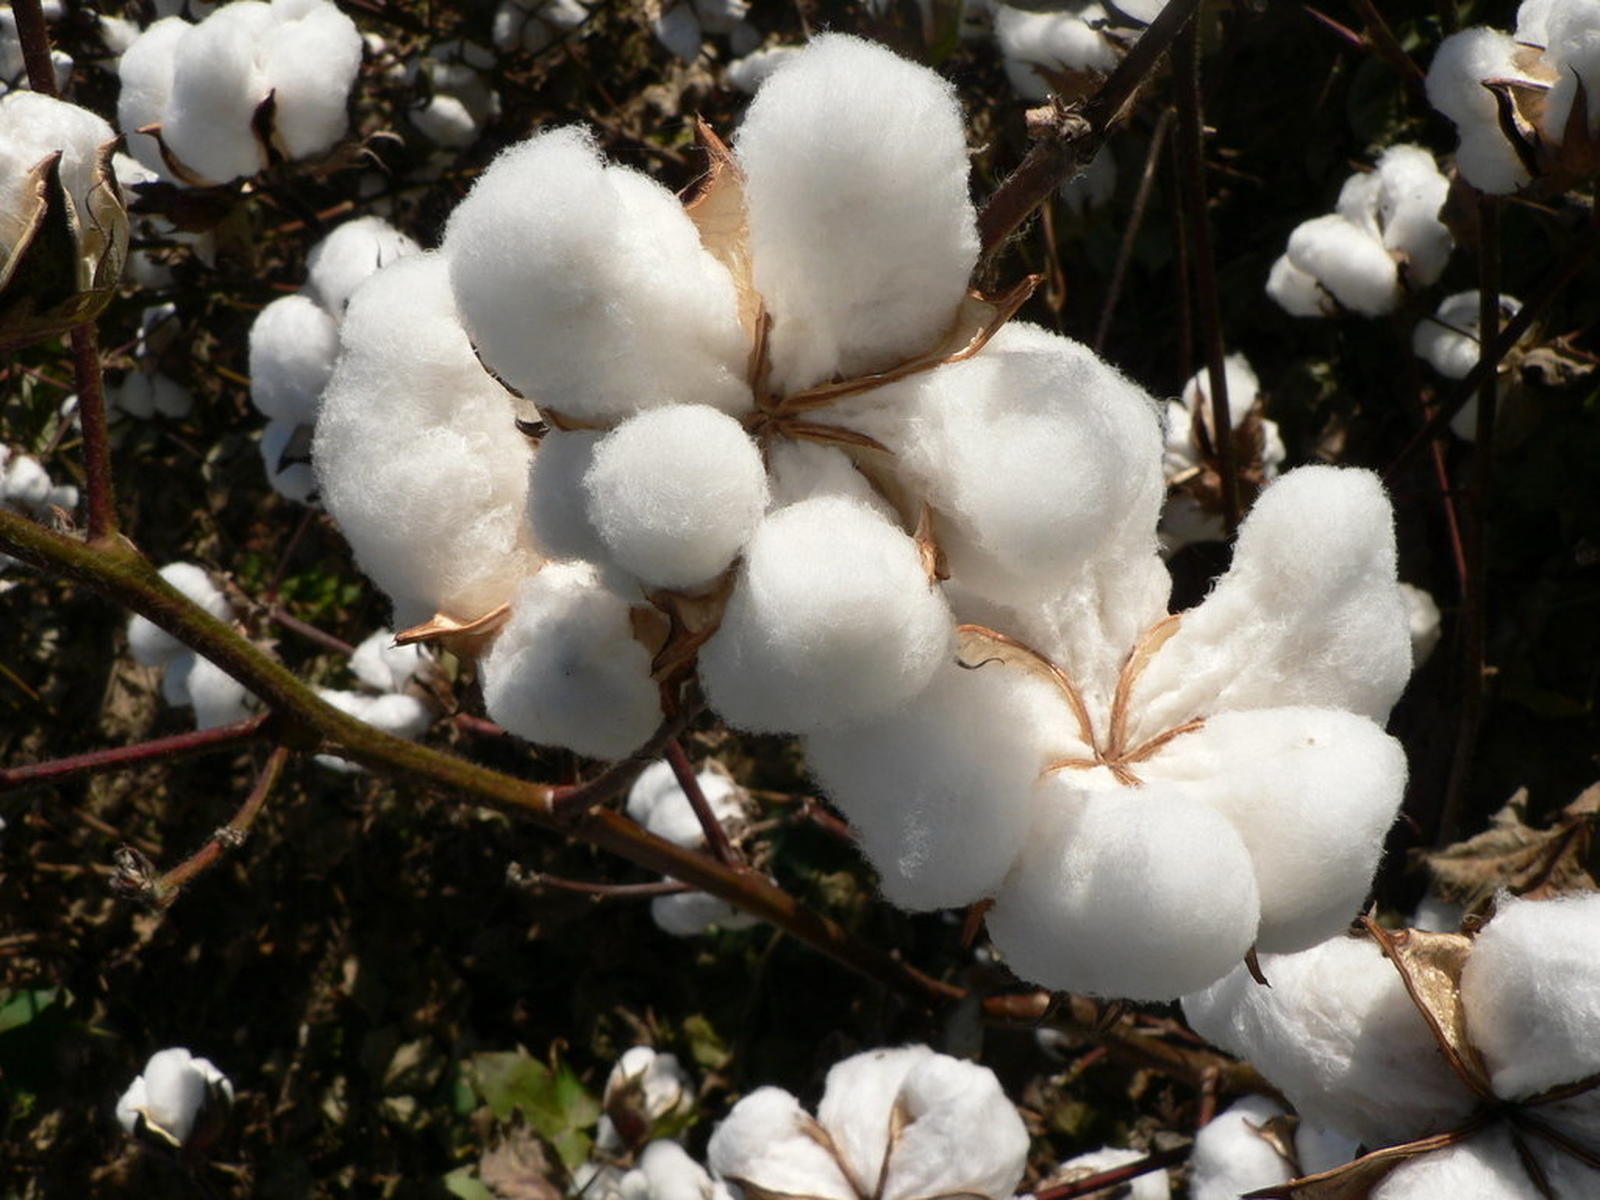 Receitas de exportação do algodão caíram 6,3% para 34,3 milhões de dólares no ano passado